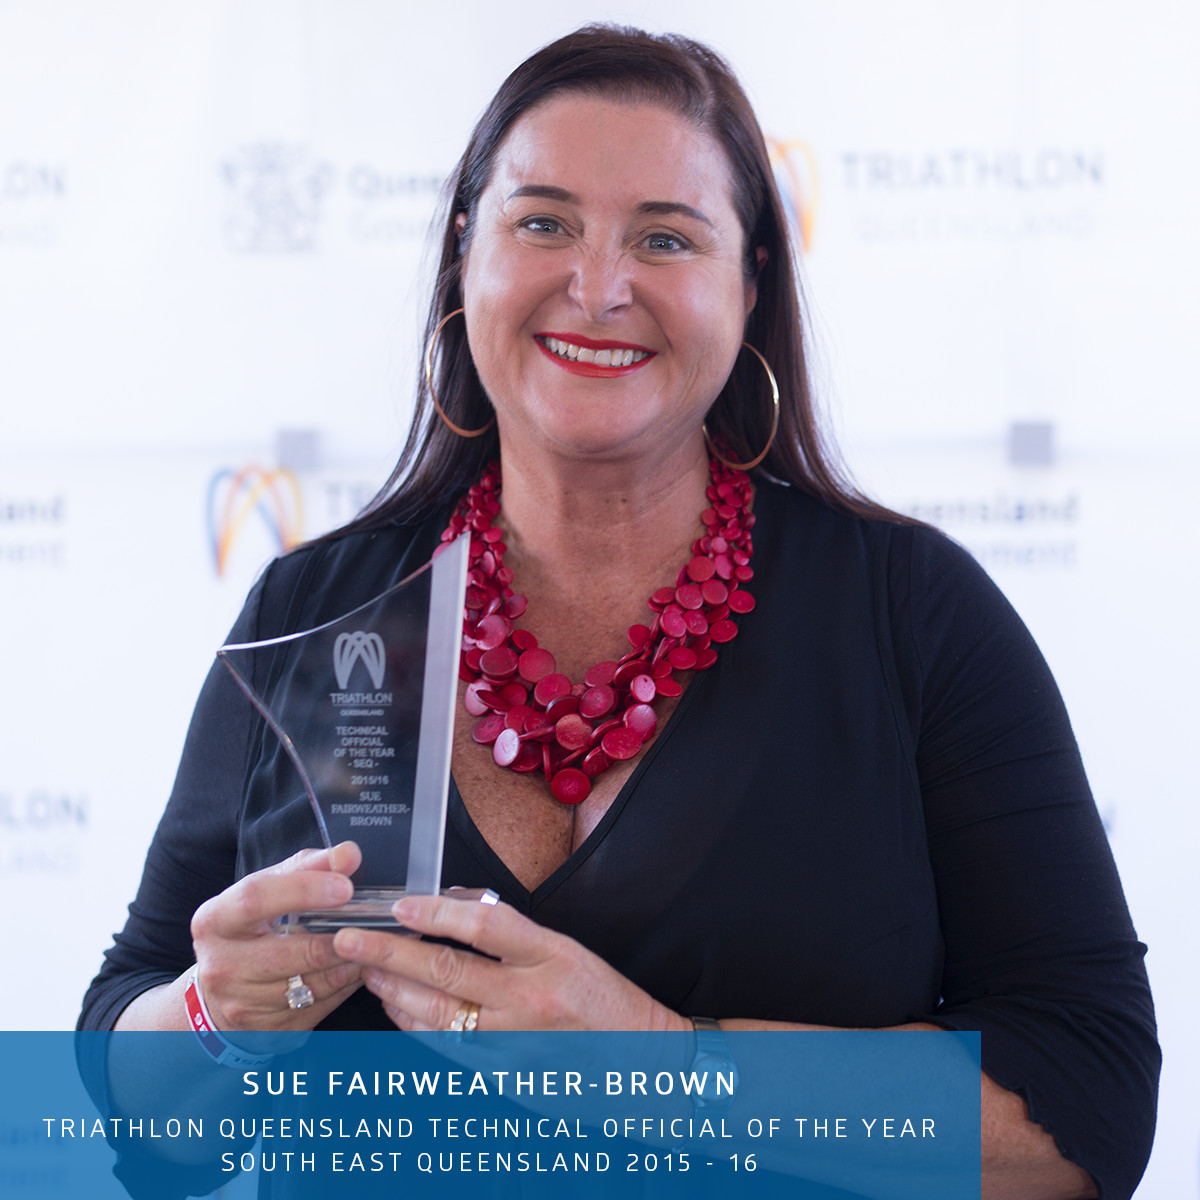 Sue Fairweather-Brown